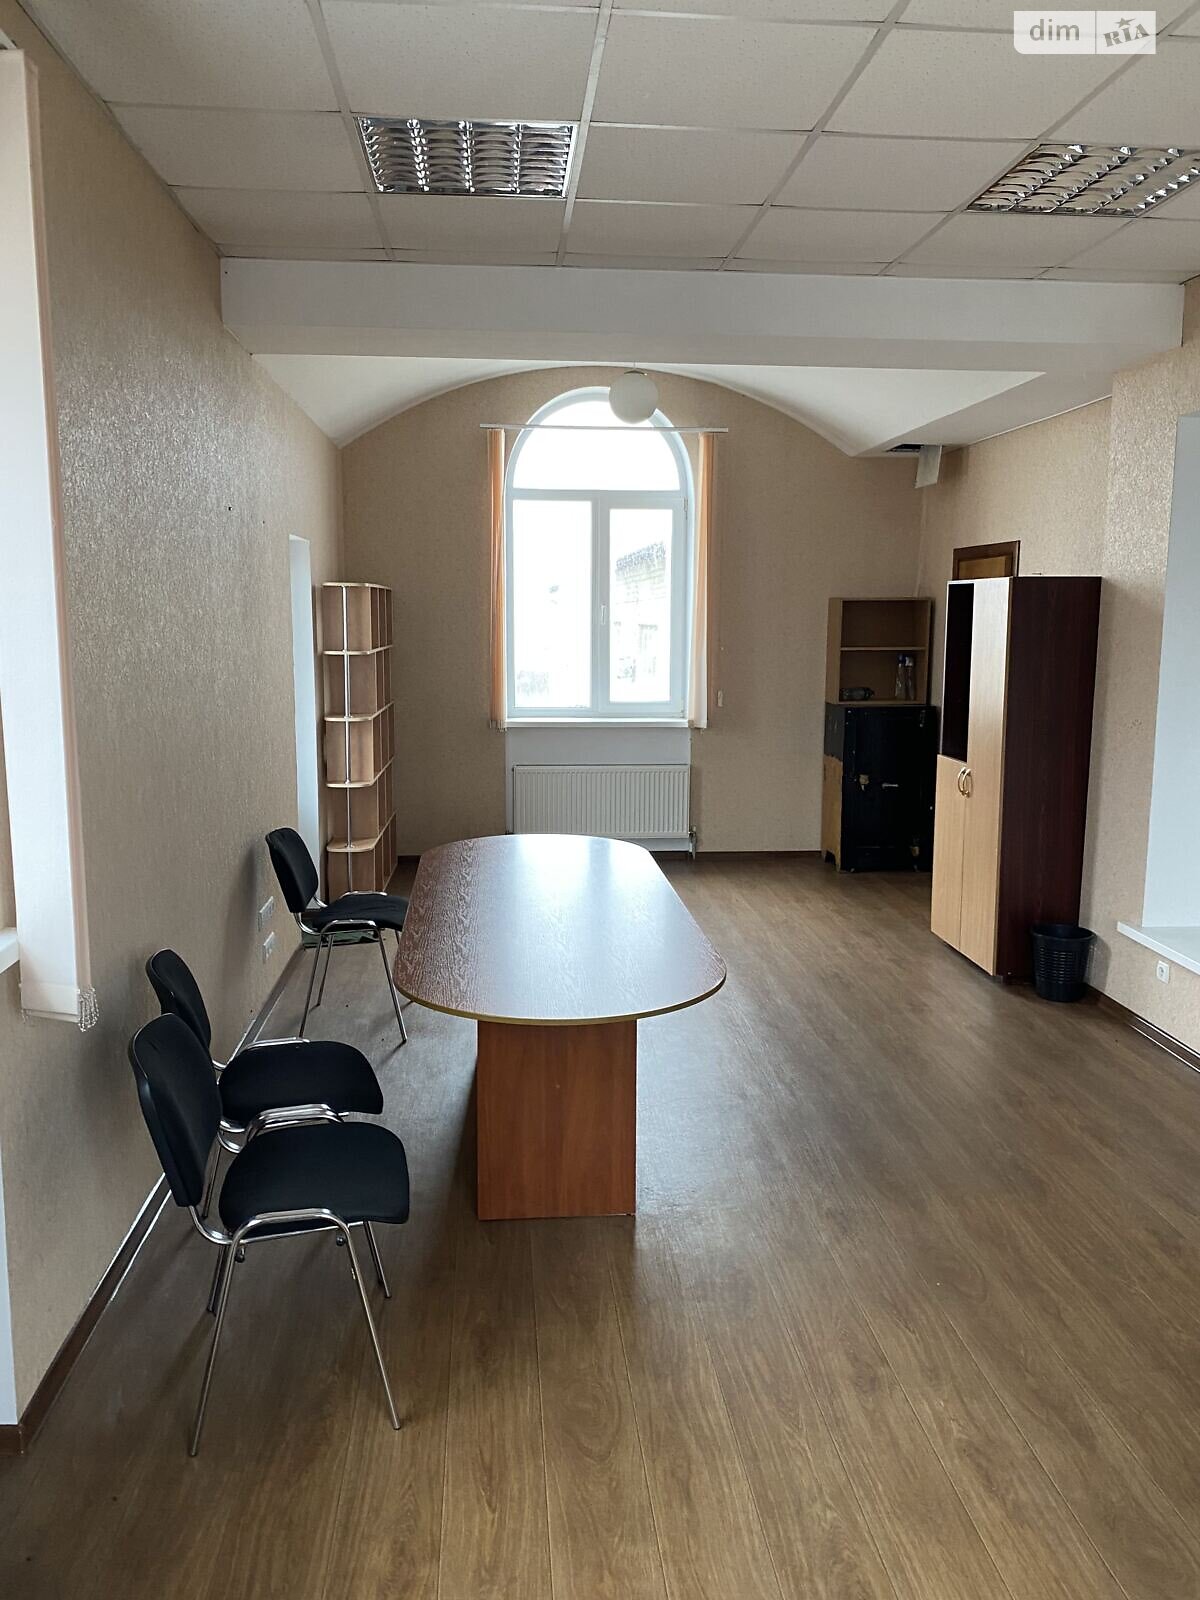 Аренда офисного помещения в Чернигове, Кольцевая улица 7, помещений - 1, этаж - 2 фото 1